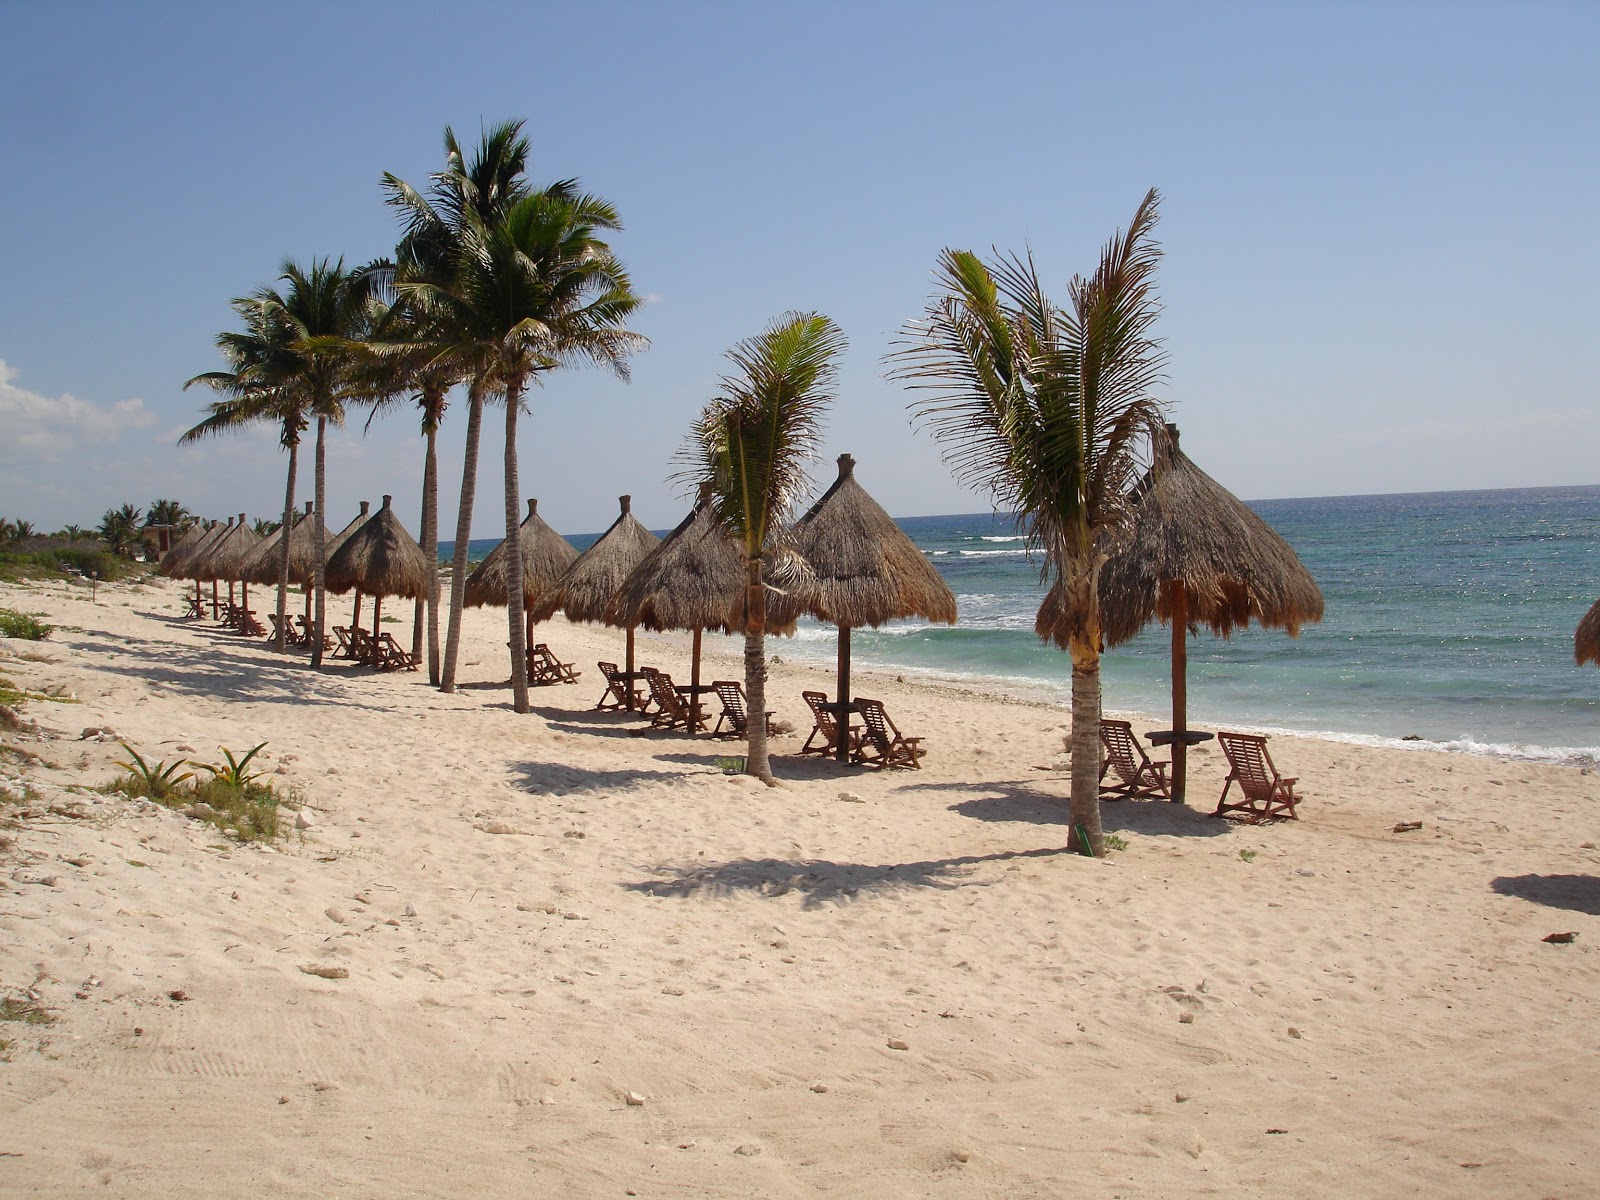 Xel-Ha Park beach'in fotoğrafı geniş plaj ile birlikte